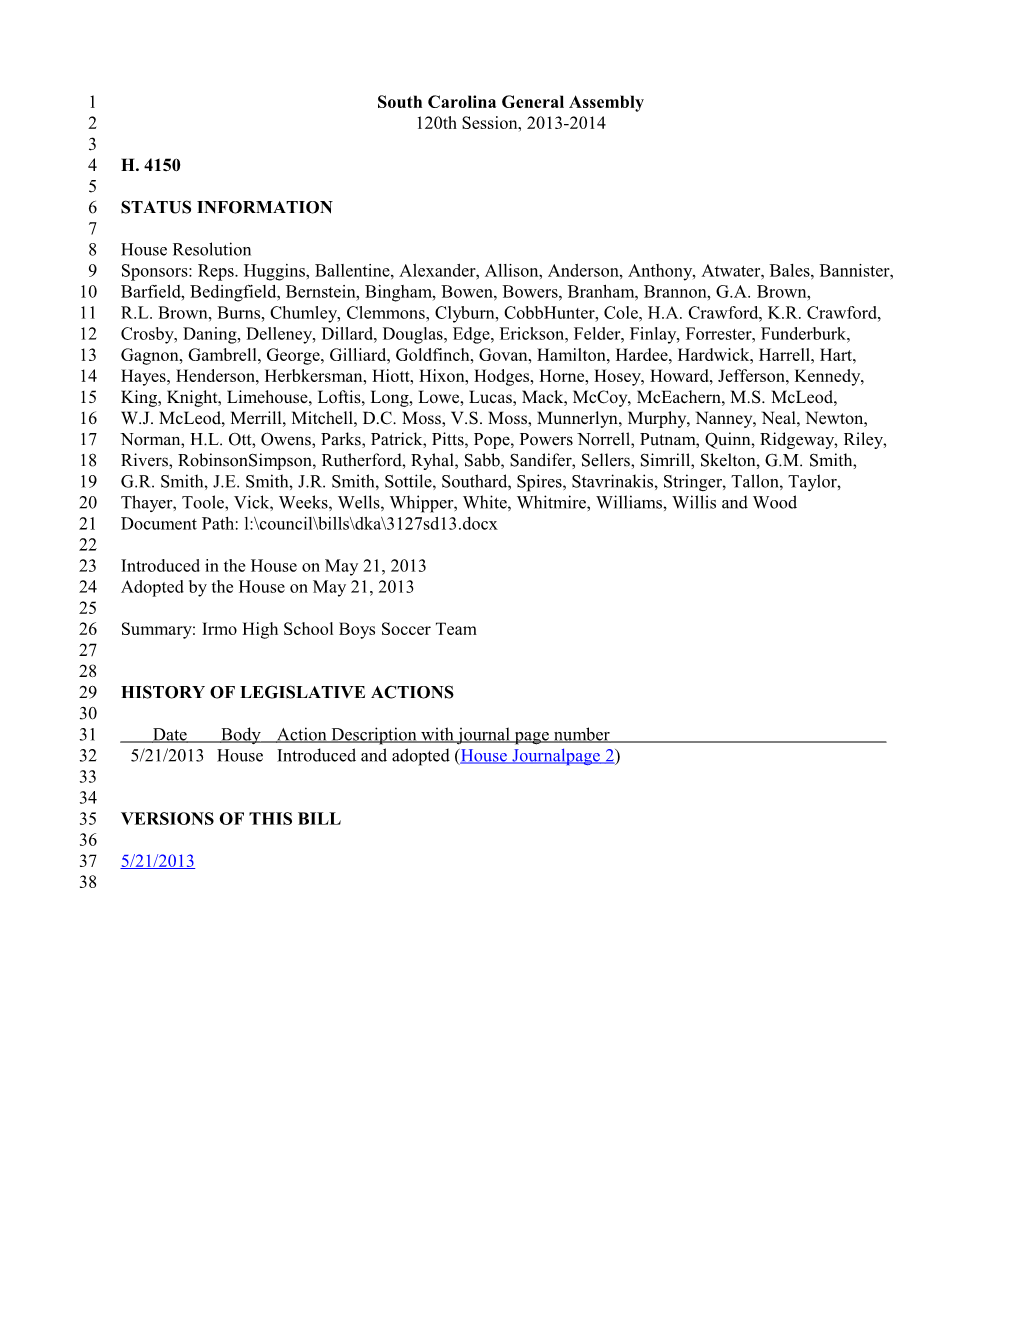 2013-2014 Bill 4150: Irmo High School Boys Soccer Team - South Carolina Legislature Online